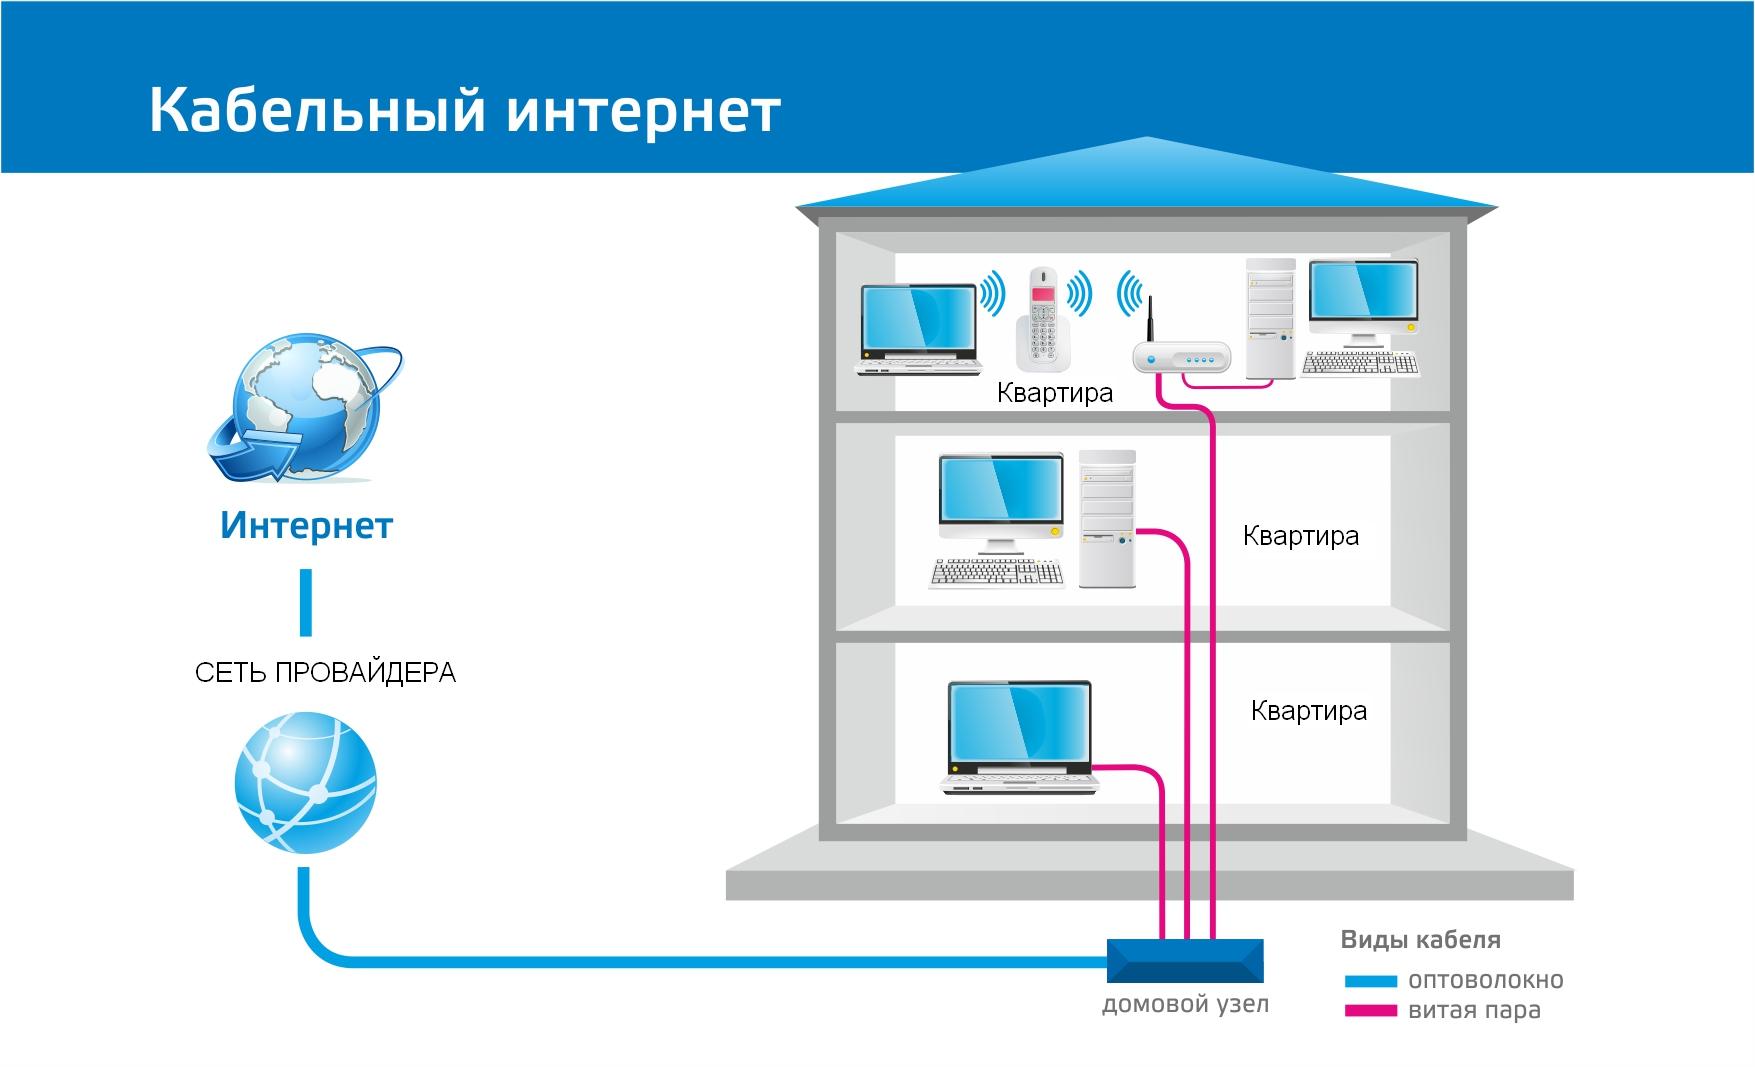 Подключить интернет в московской области. Технология FTTB схема подключения. Схема подключения интернет кабеля Ростелеком. Схема подключения проводного интернета в квартире. Схема подключения абонентов по технологии FTTB.